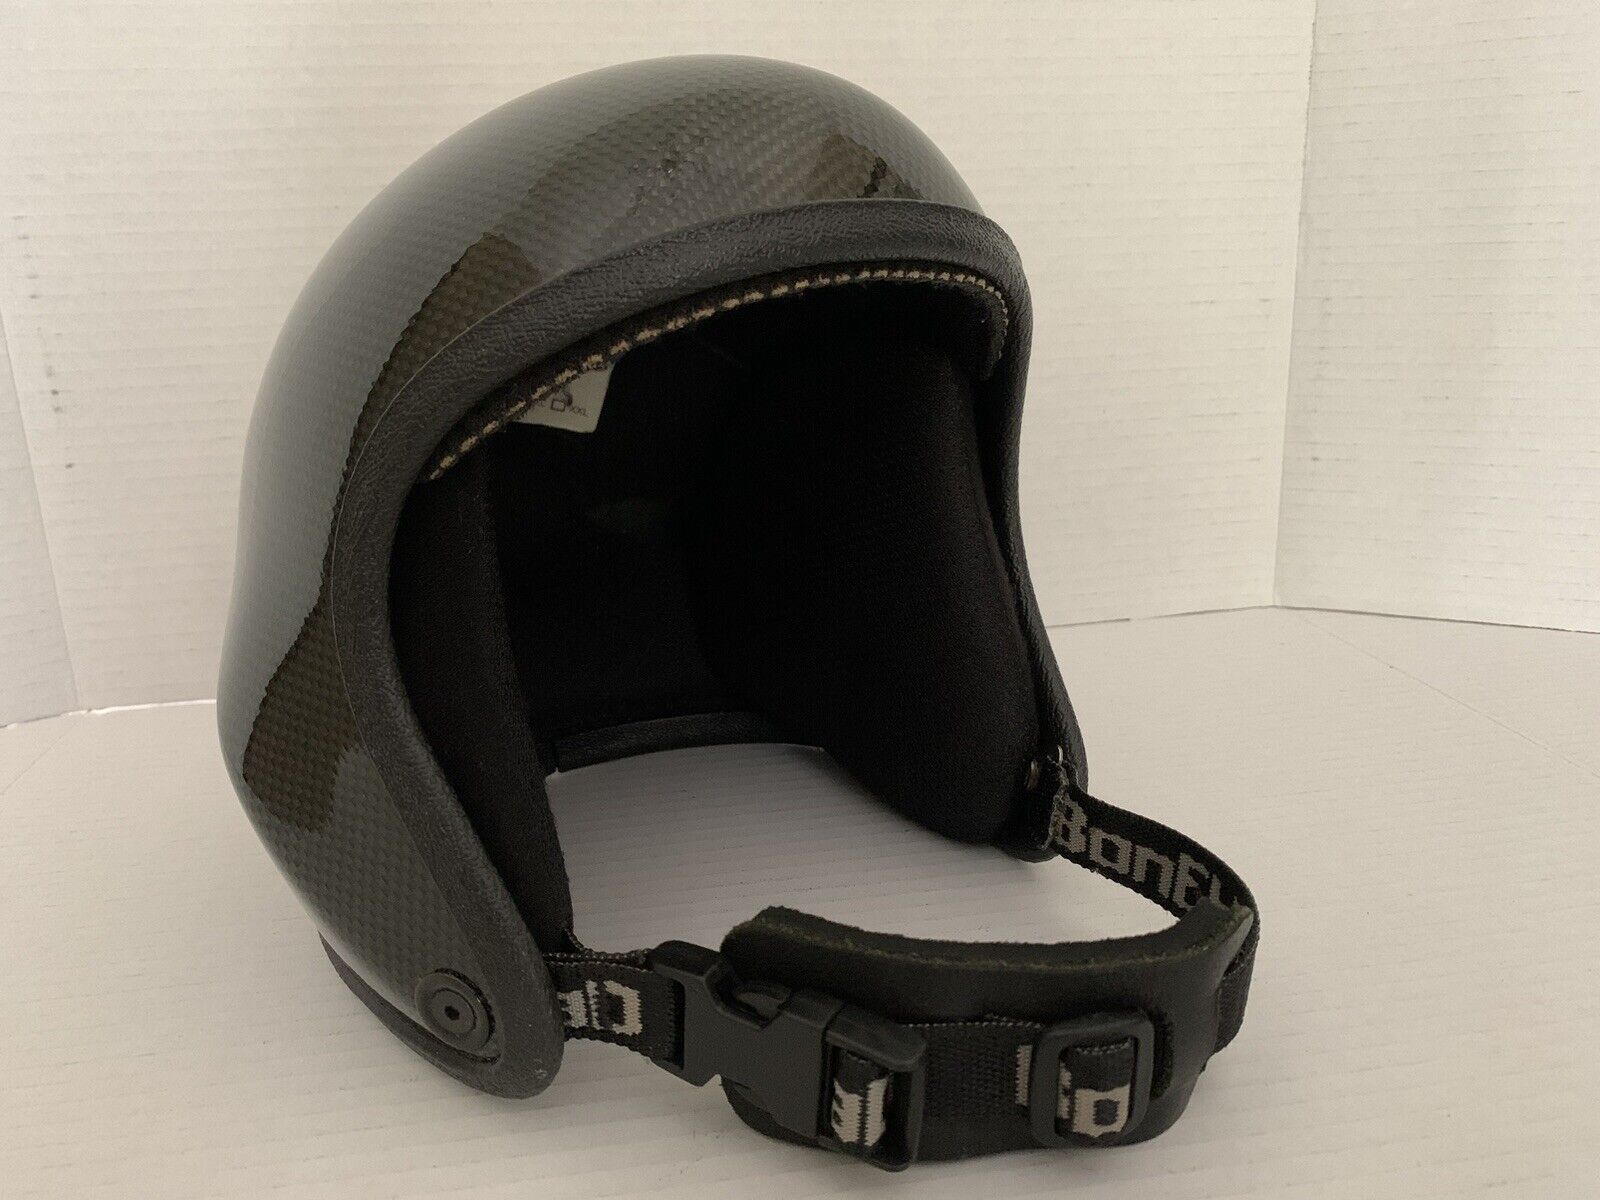 Bonehead Composites Skydiving Helmet Size Medium Color: Black Carbon Fiber